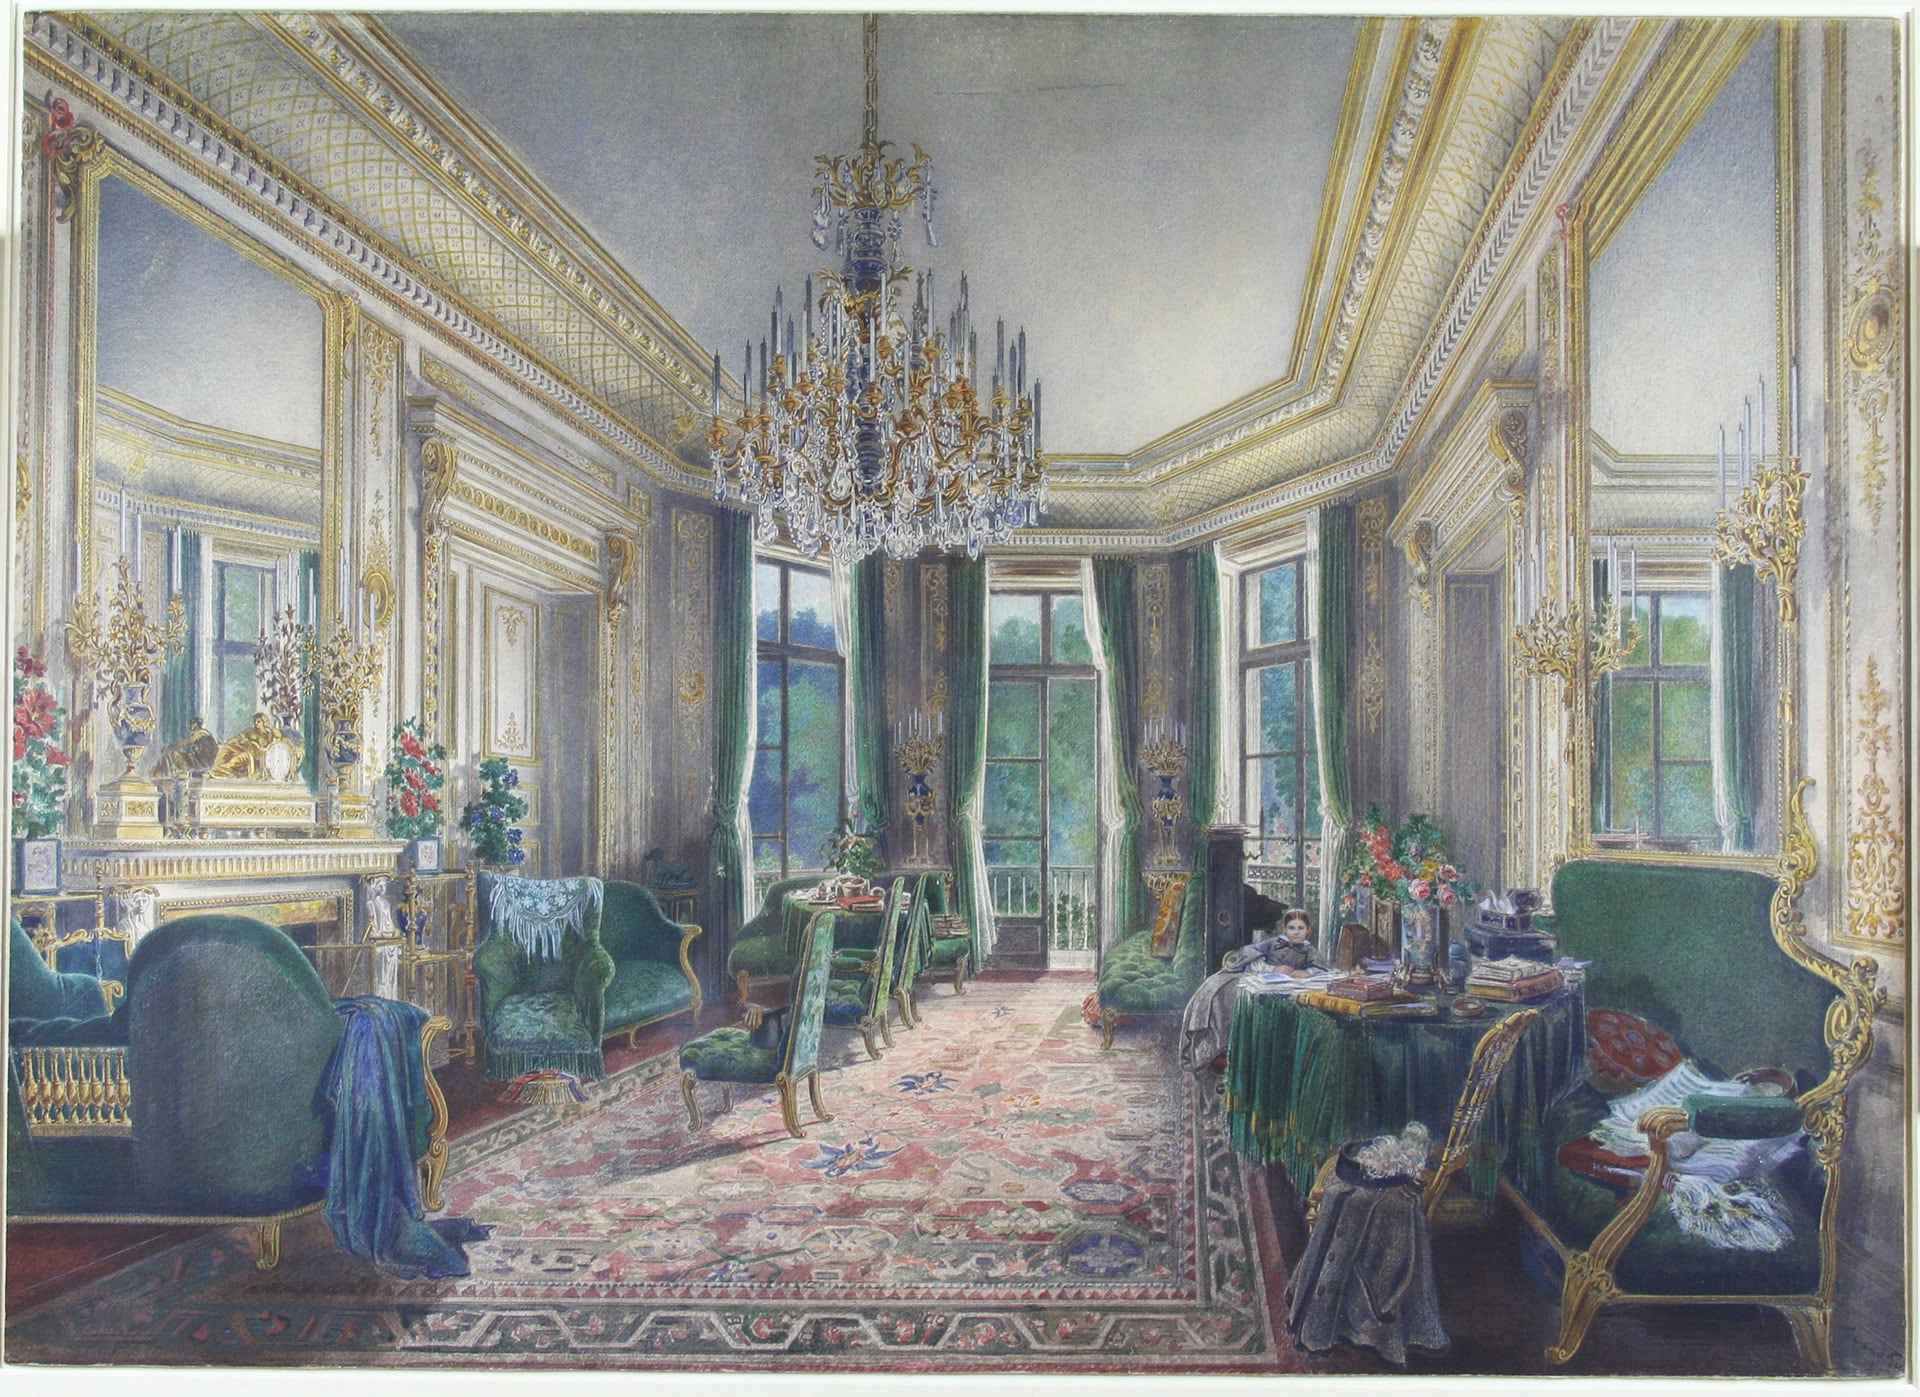 Fernand Pelez de Cordova(1820-1899) “Salone epoca secondo impero”, 1862. Acquerello su cartoncino, 42,1 x 58,7 cm 